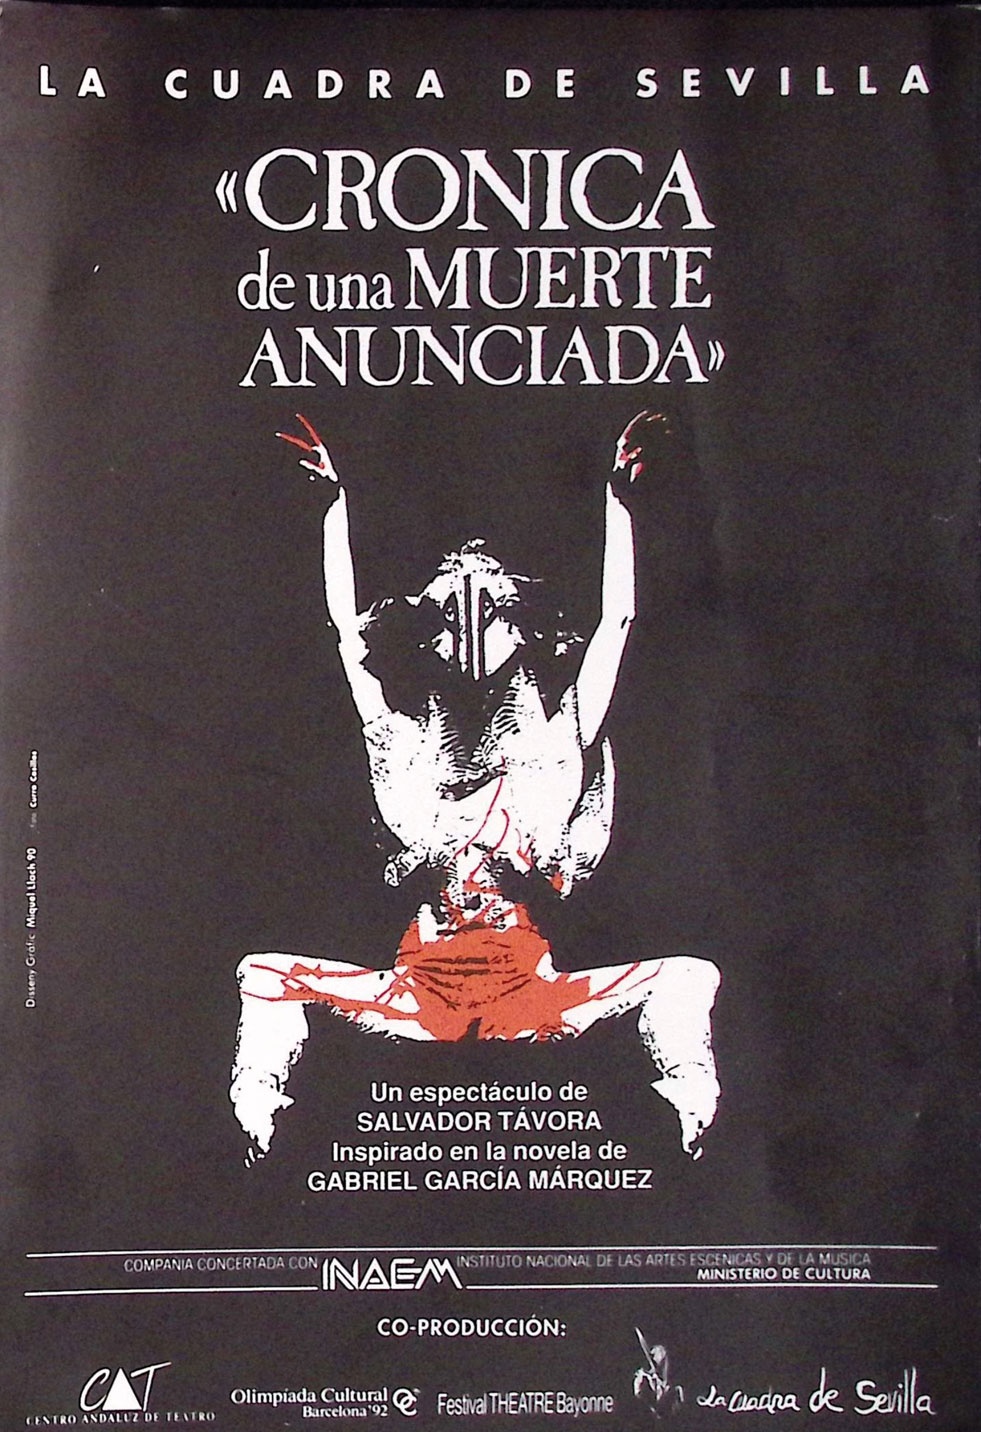 "Crónica de una muerte anunciada". Un espectáculo de Salvador Távora. Inspirado en la novela de Gabriel García Márquez. La Cuadra de Sevilla